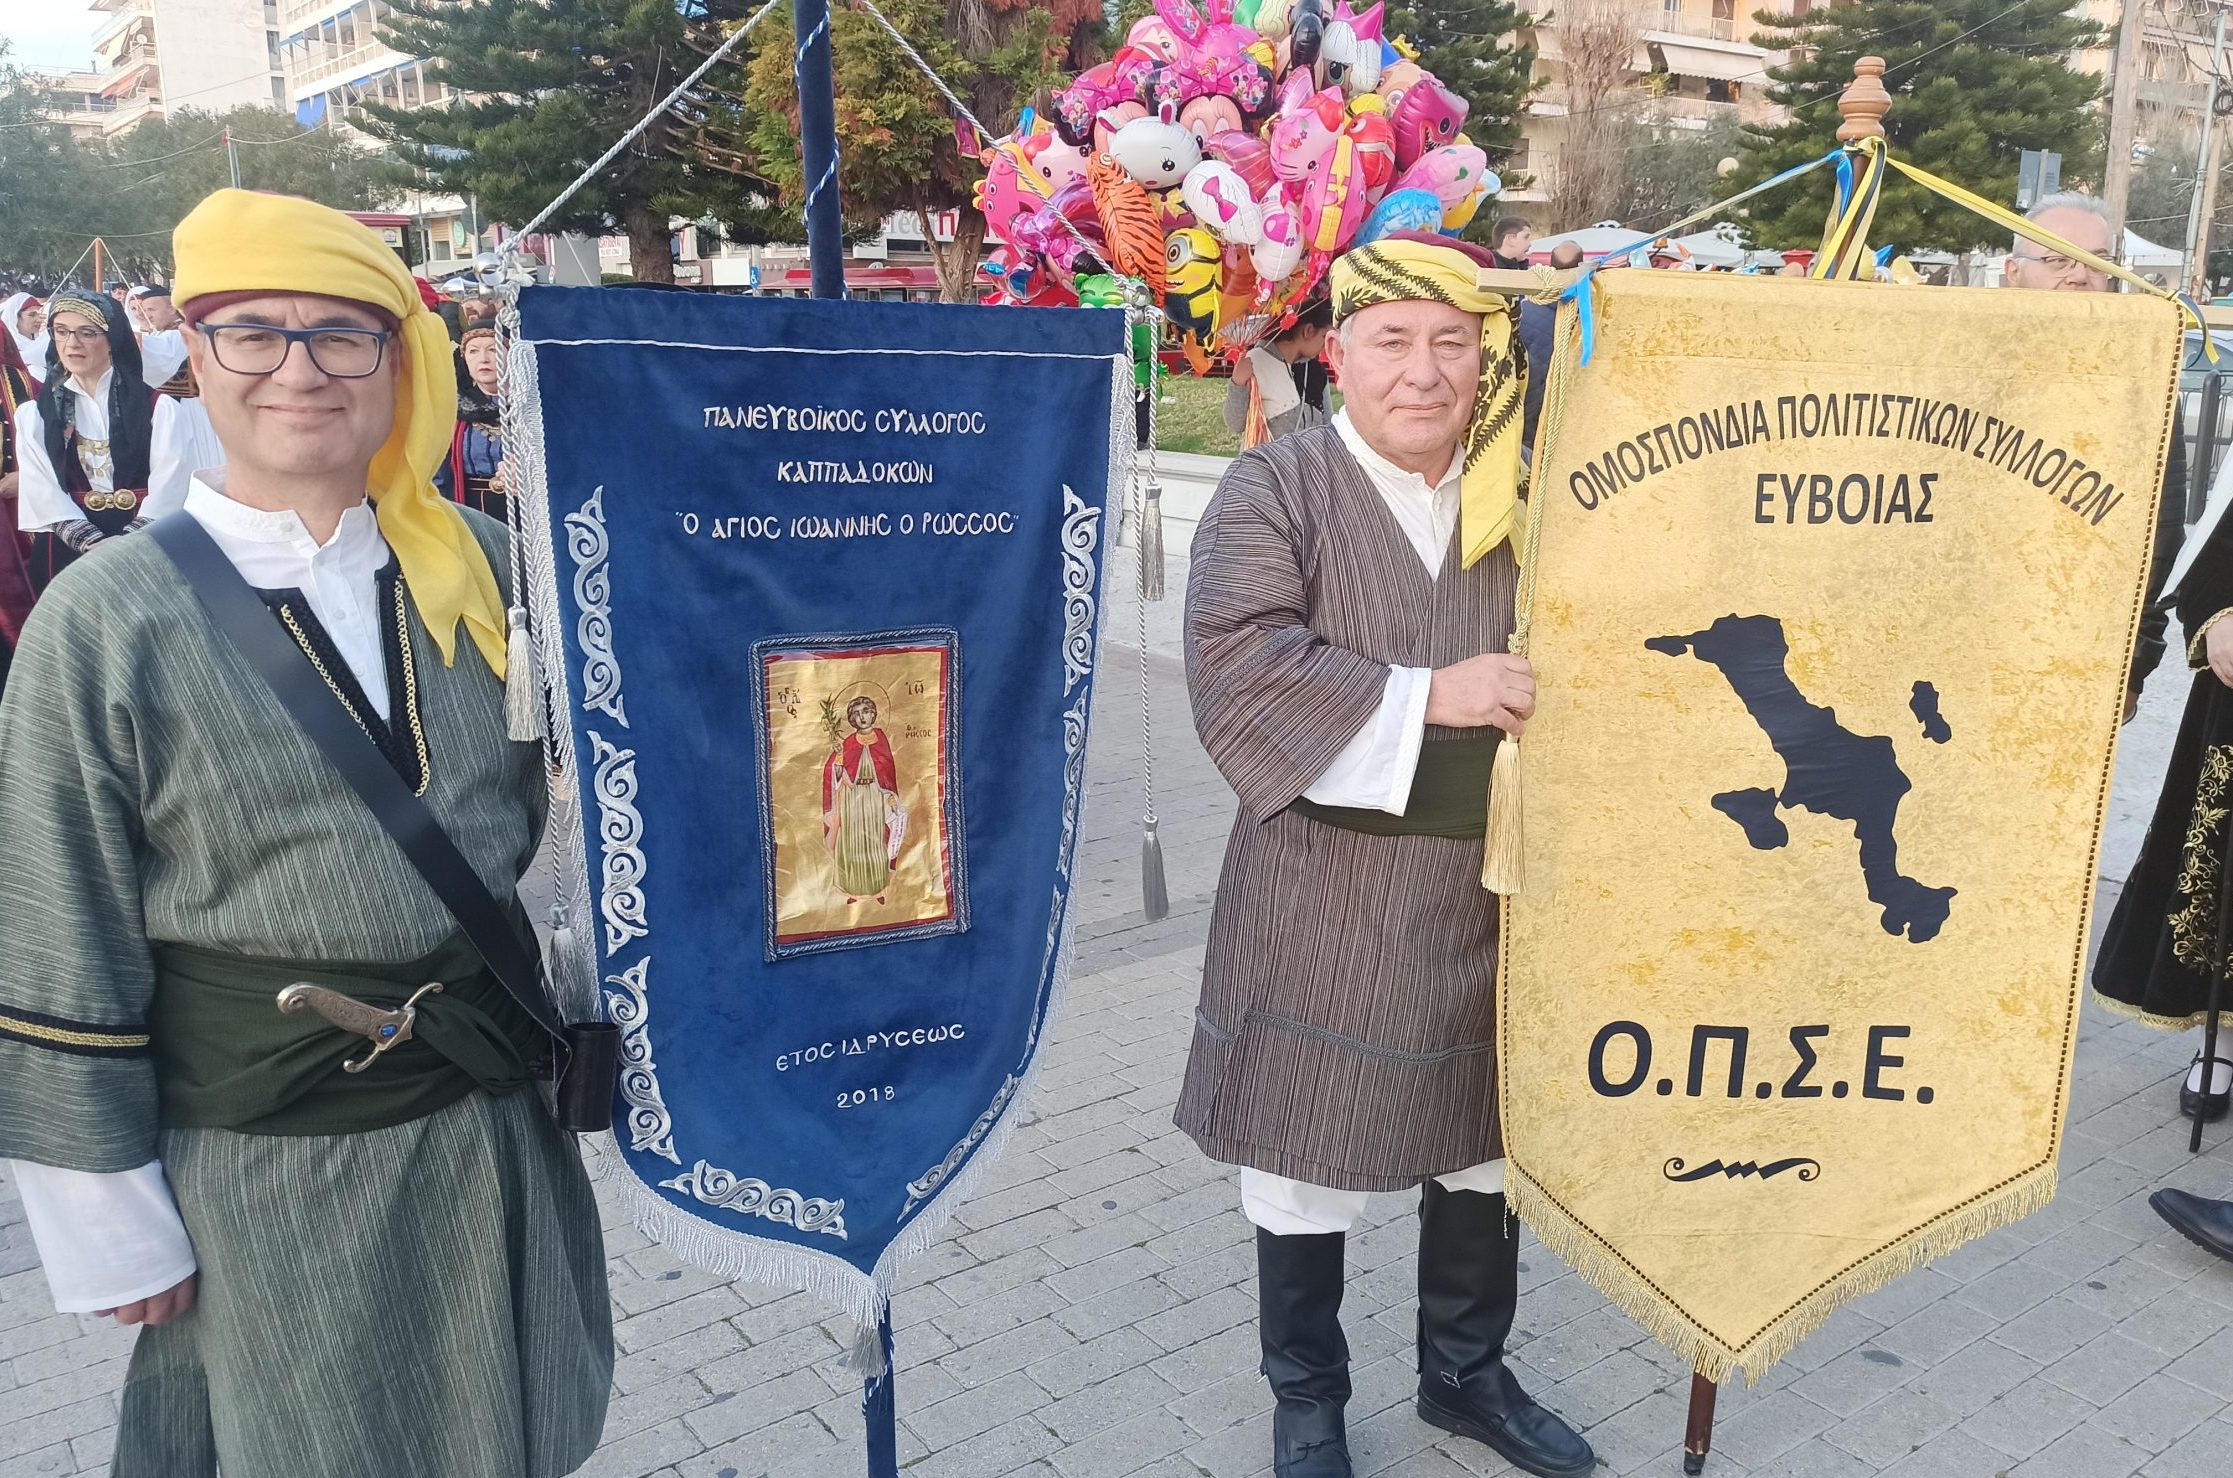 Στους εορτασμούς για την απελευθέρωση της Ευβοίας, ο Πανευβοϊκός Σύλλογος Καππαδοκών «Άγιος Ιωάννης ο Ρώσος»